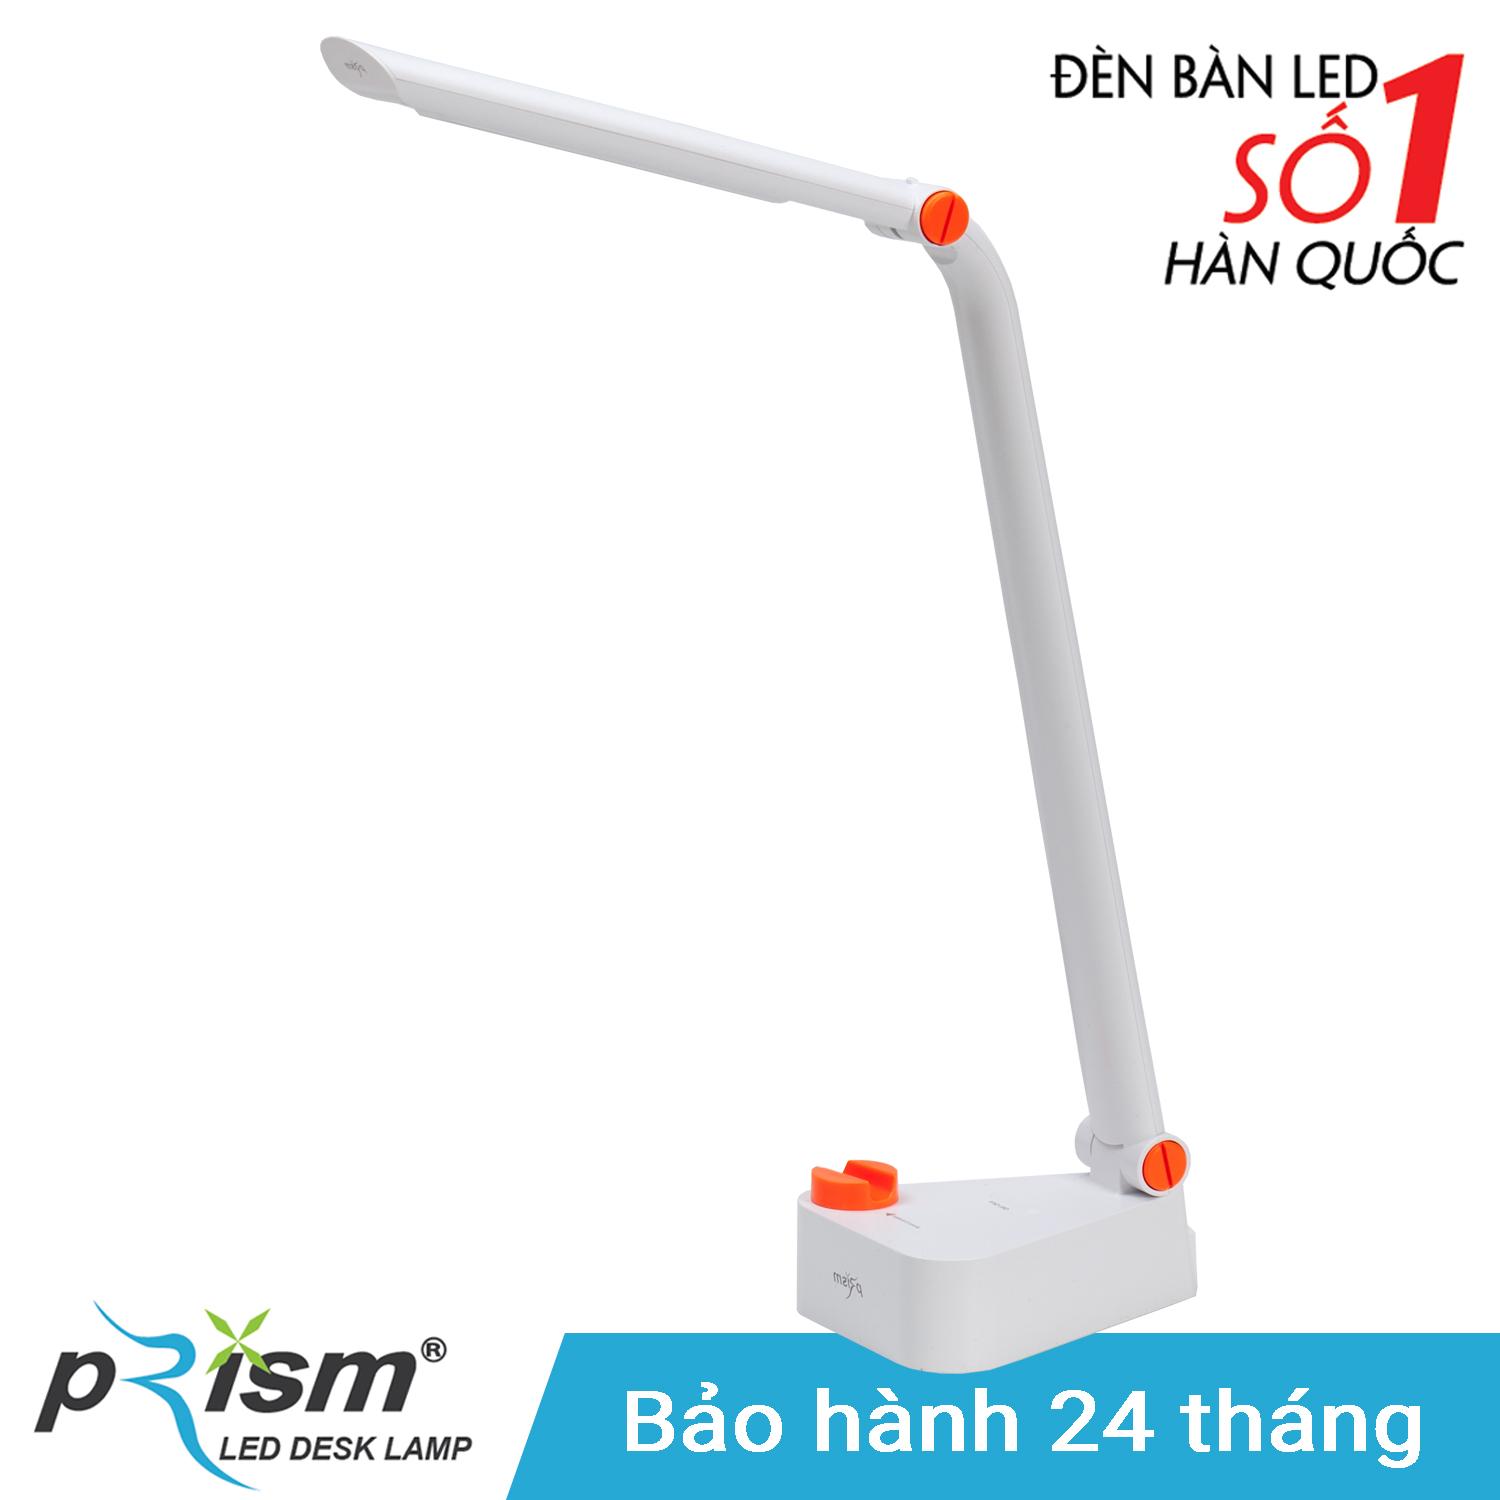 Đèn bàn LED PRISM Hàn Quốc 1777W công suất 9W ánh sáng trắng chống cận bảo vệ mắt (Trắng)